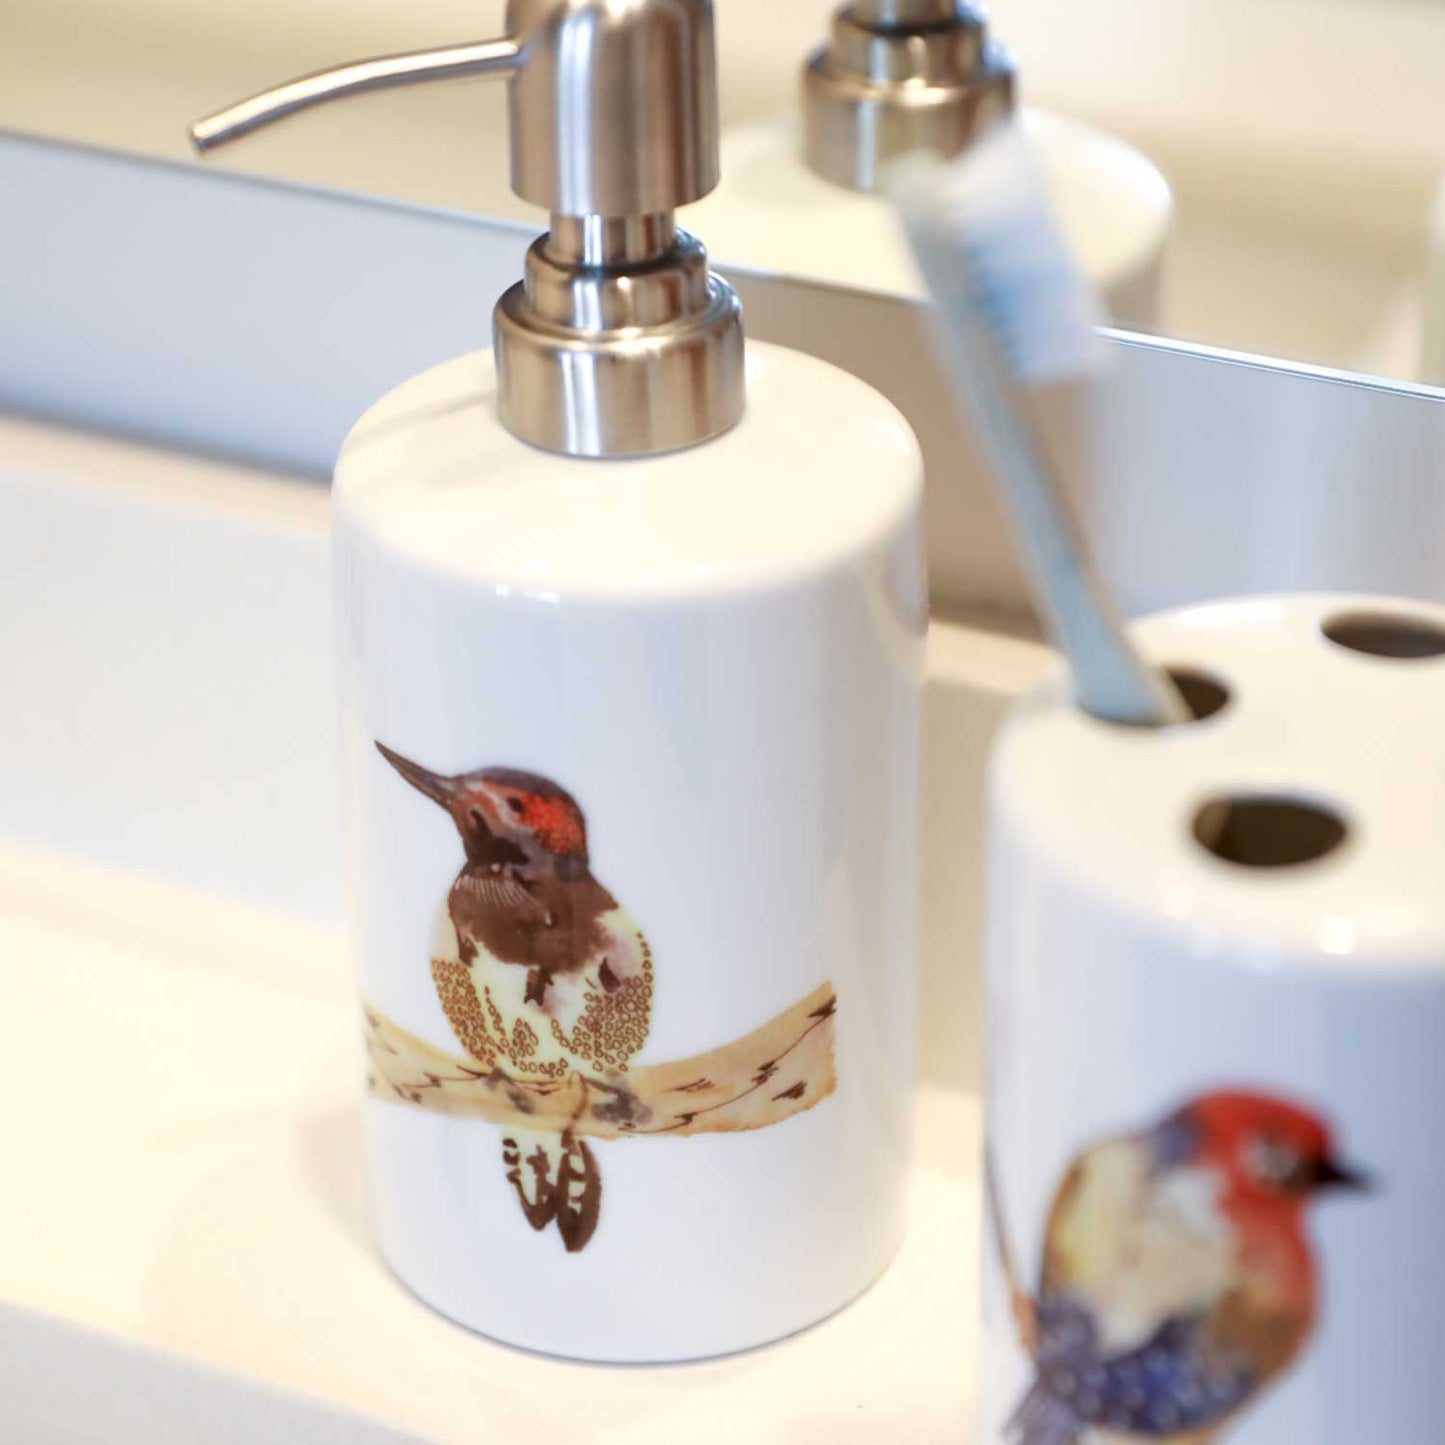 Set de baño cerámica pájaros colores 2 piezas